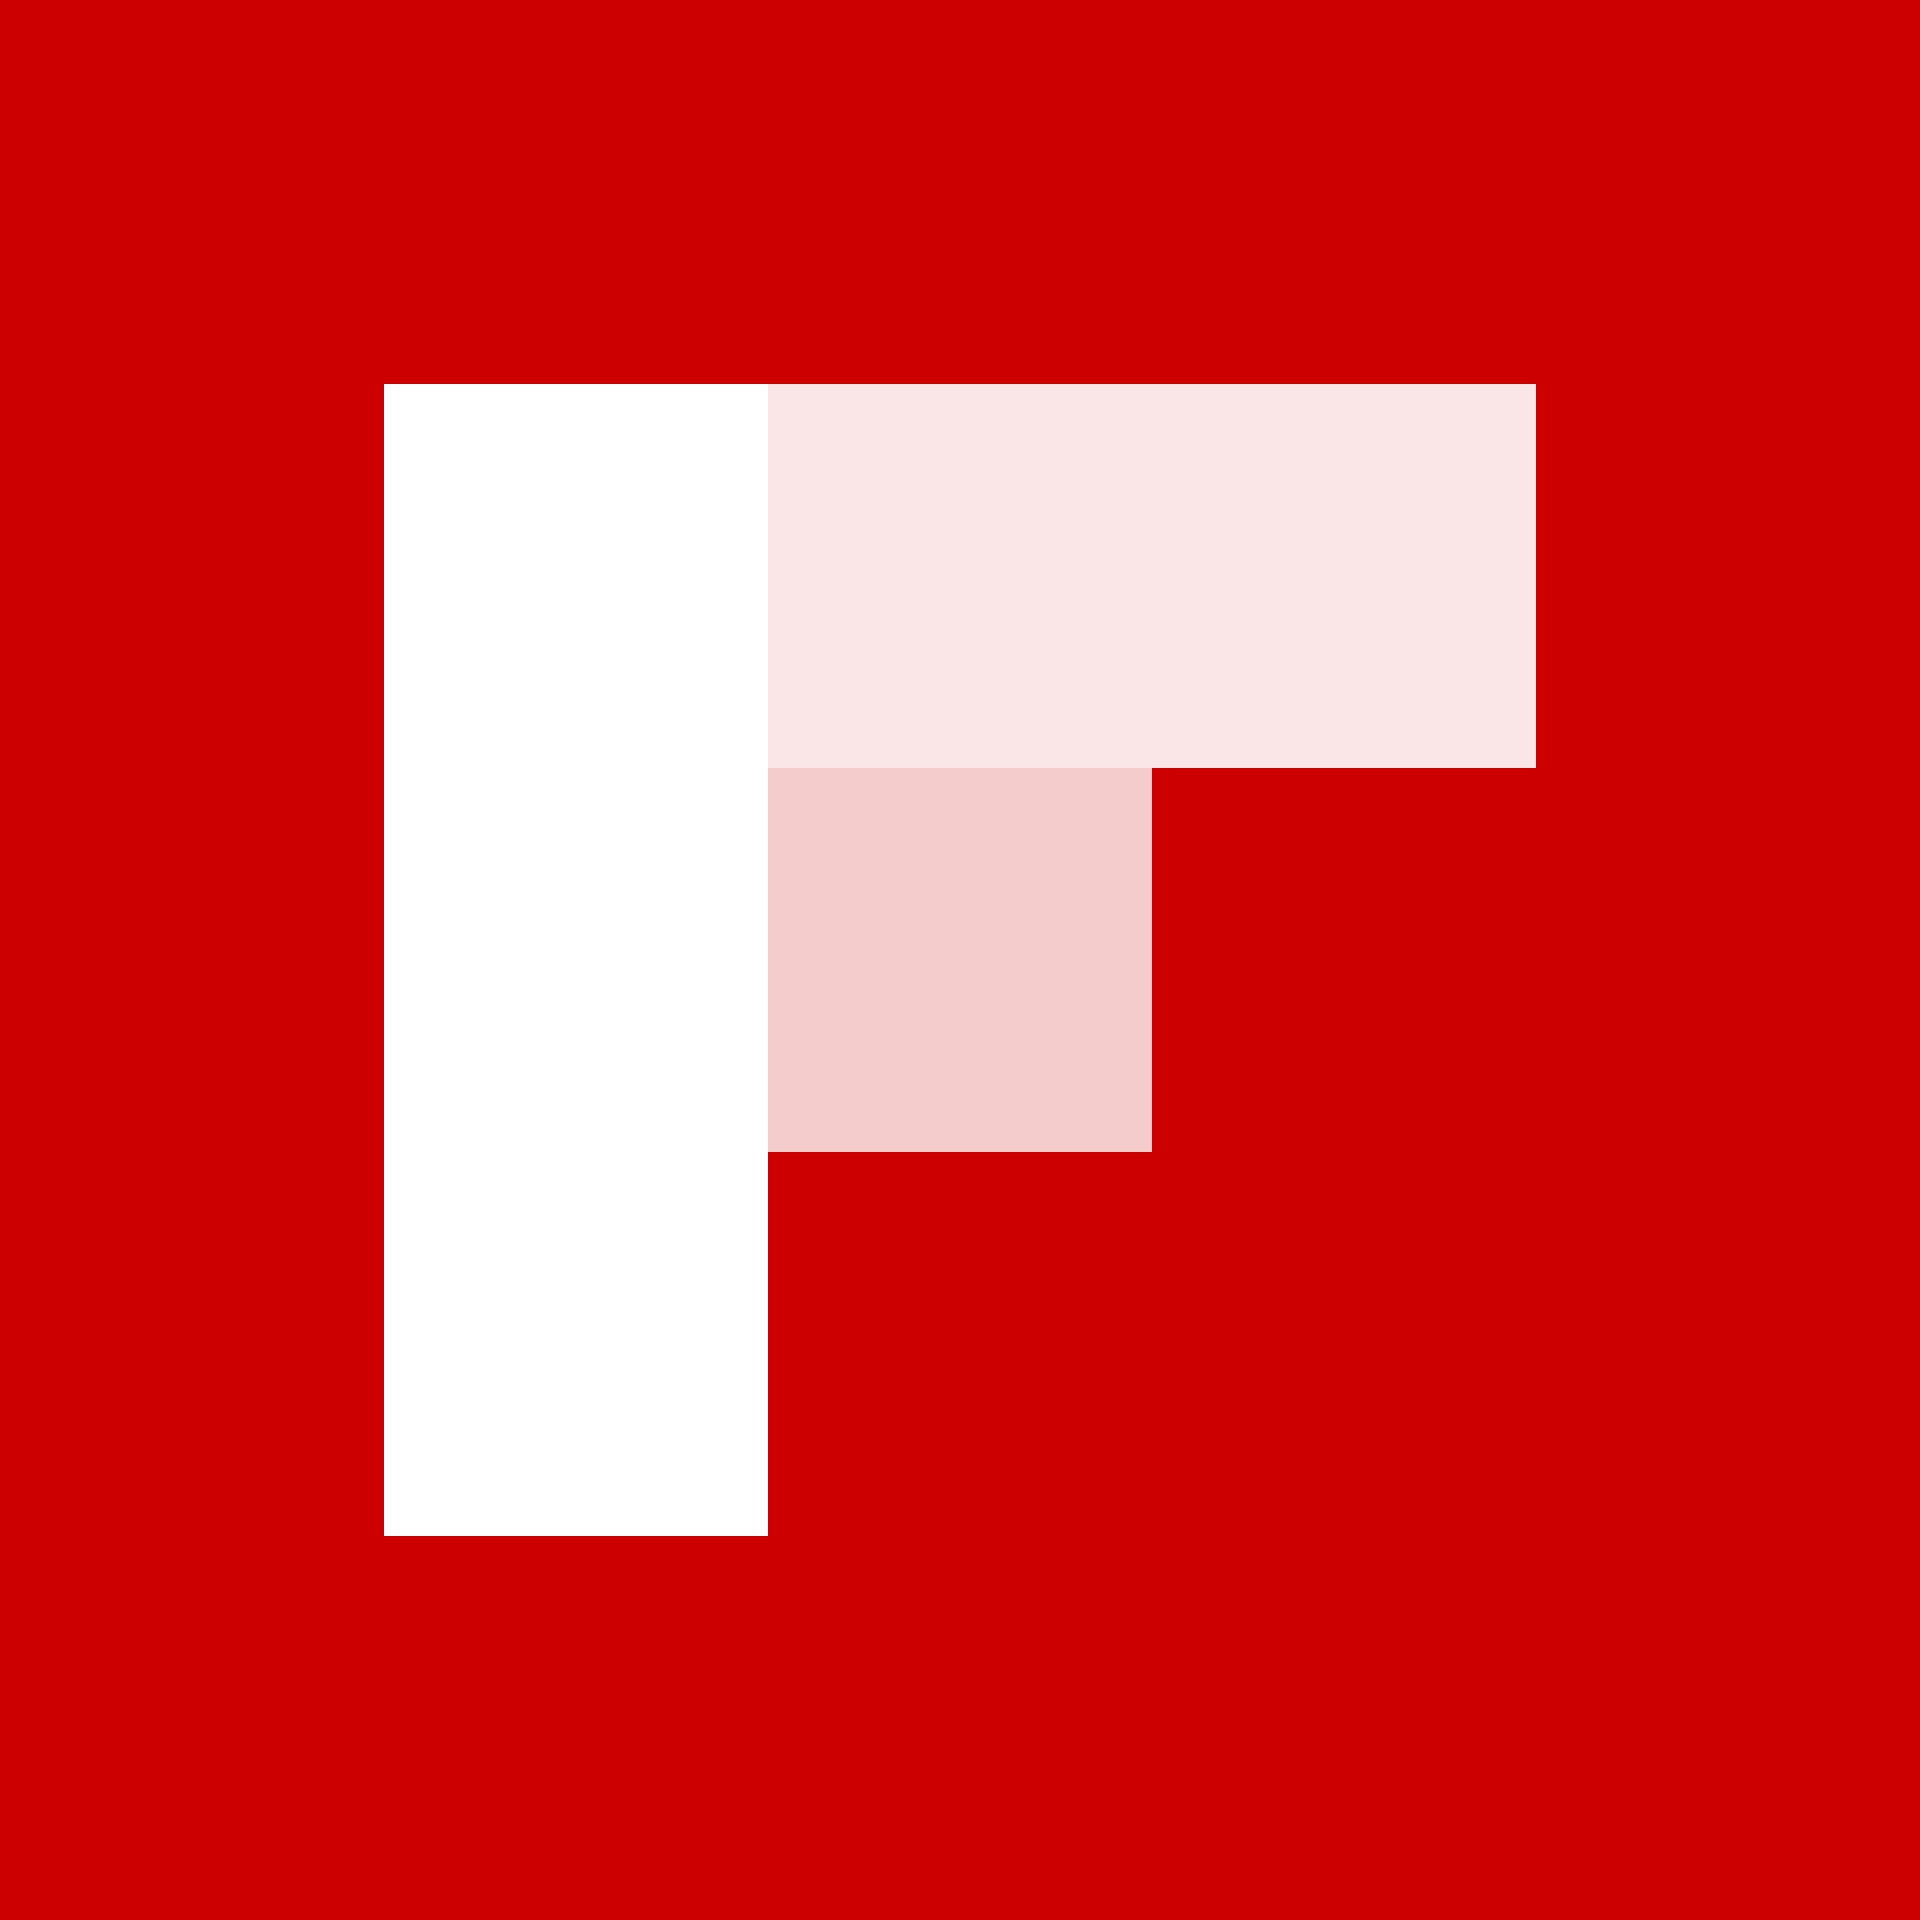 Flipboard interlude (2011-2013)